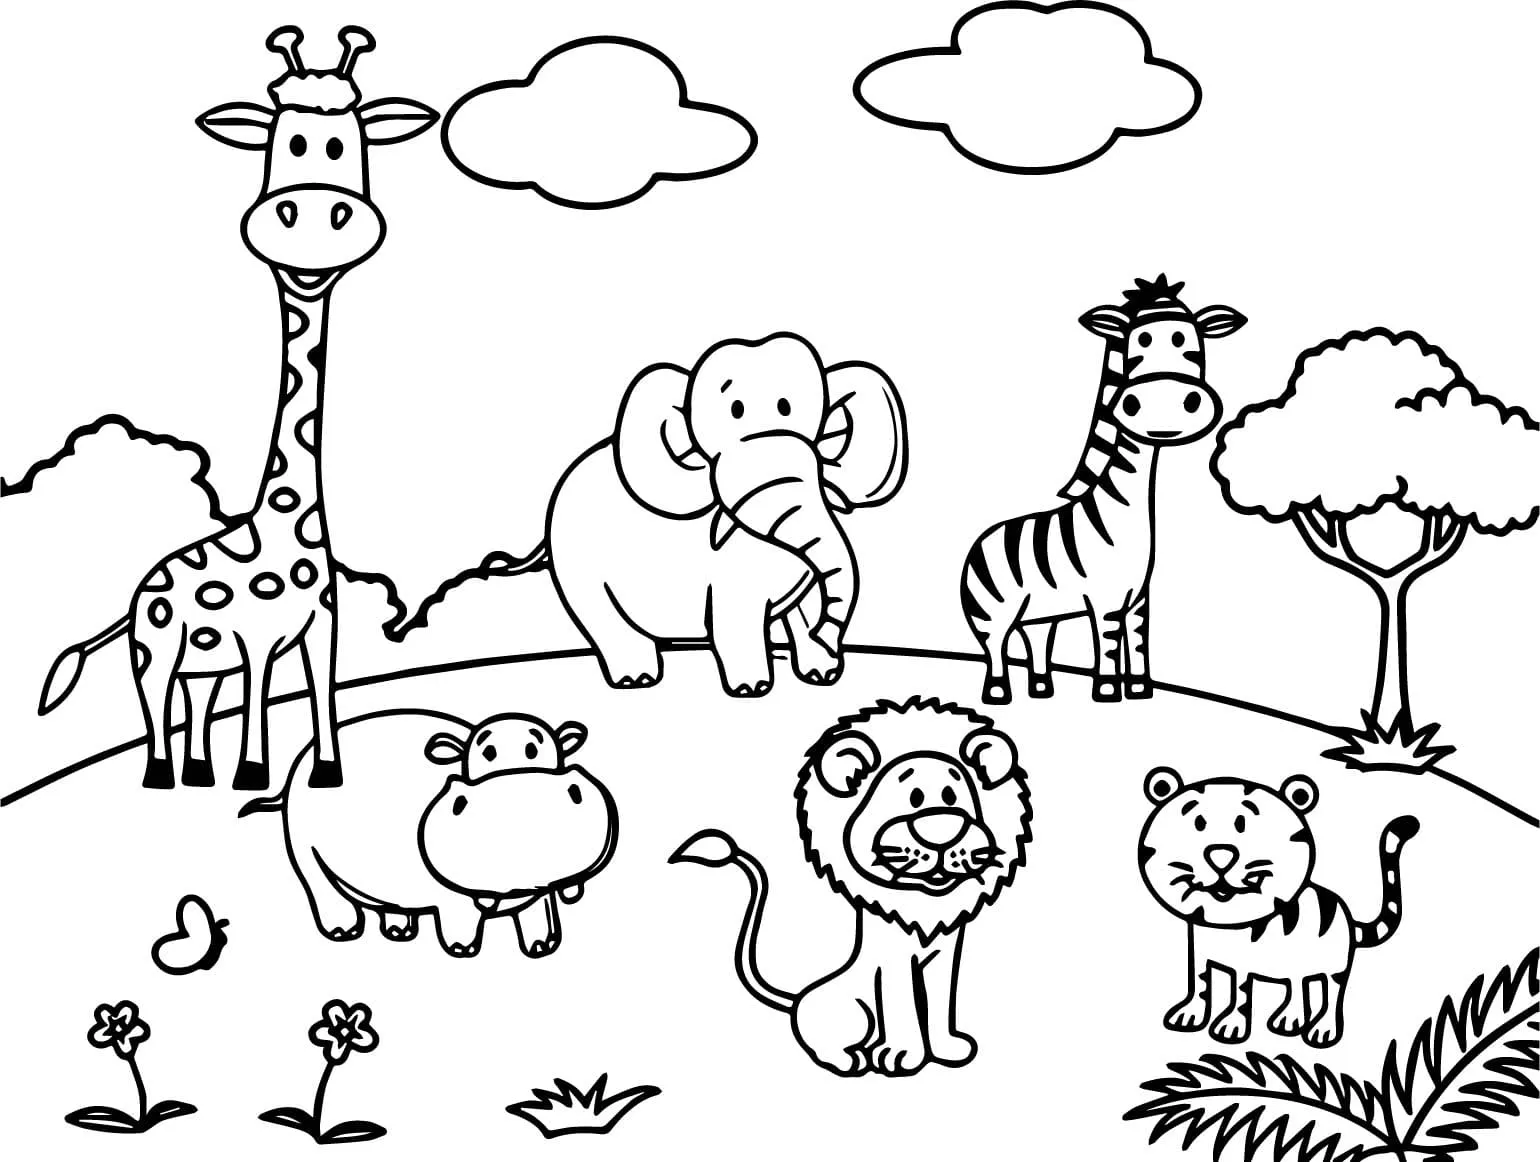 Dibujos de Animales de la Selva para Colorear - Wonder-day.com